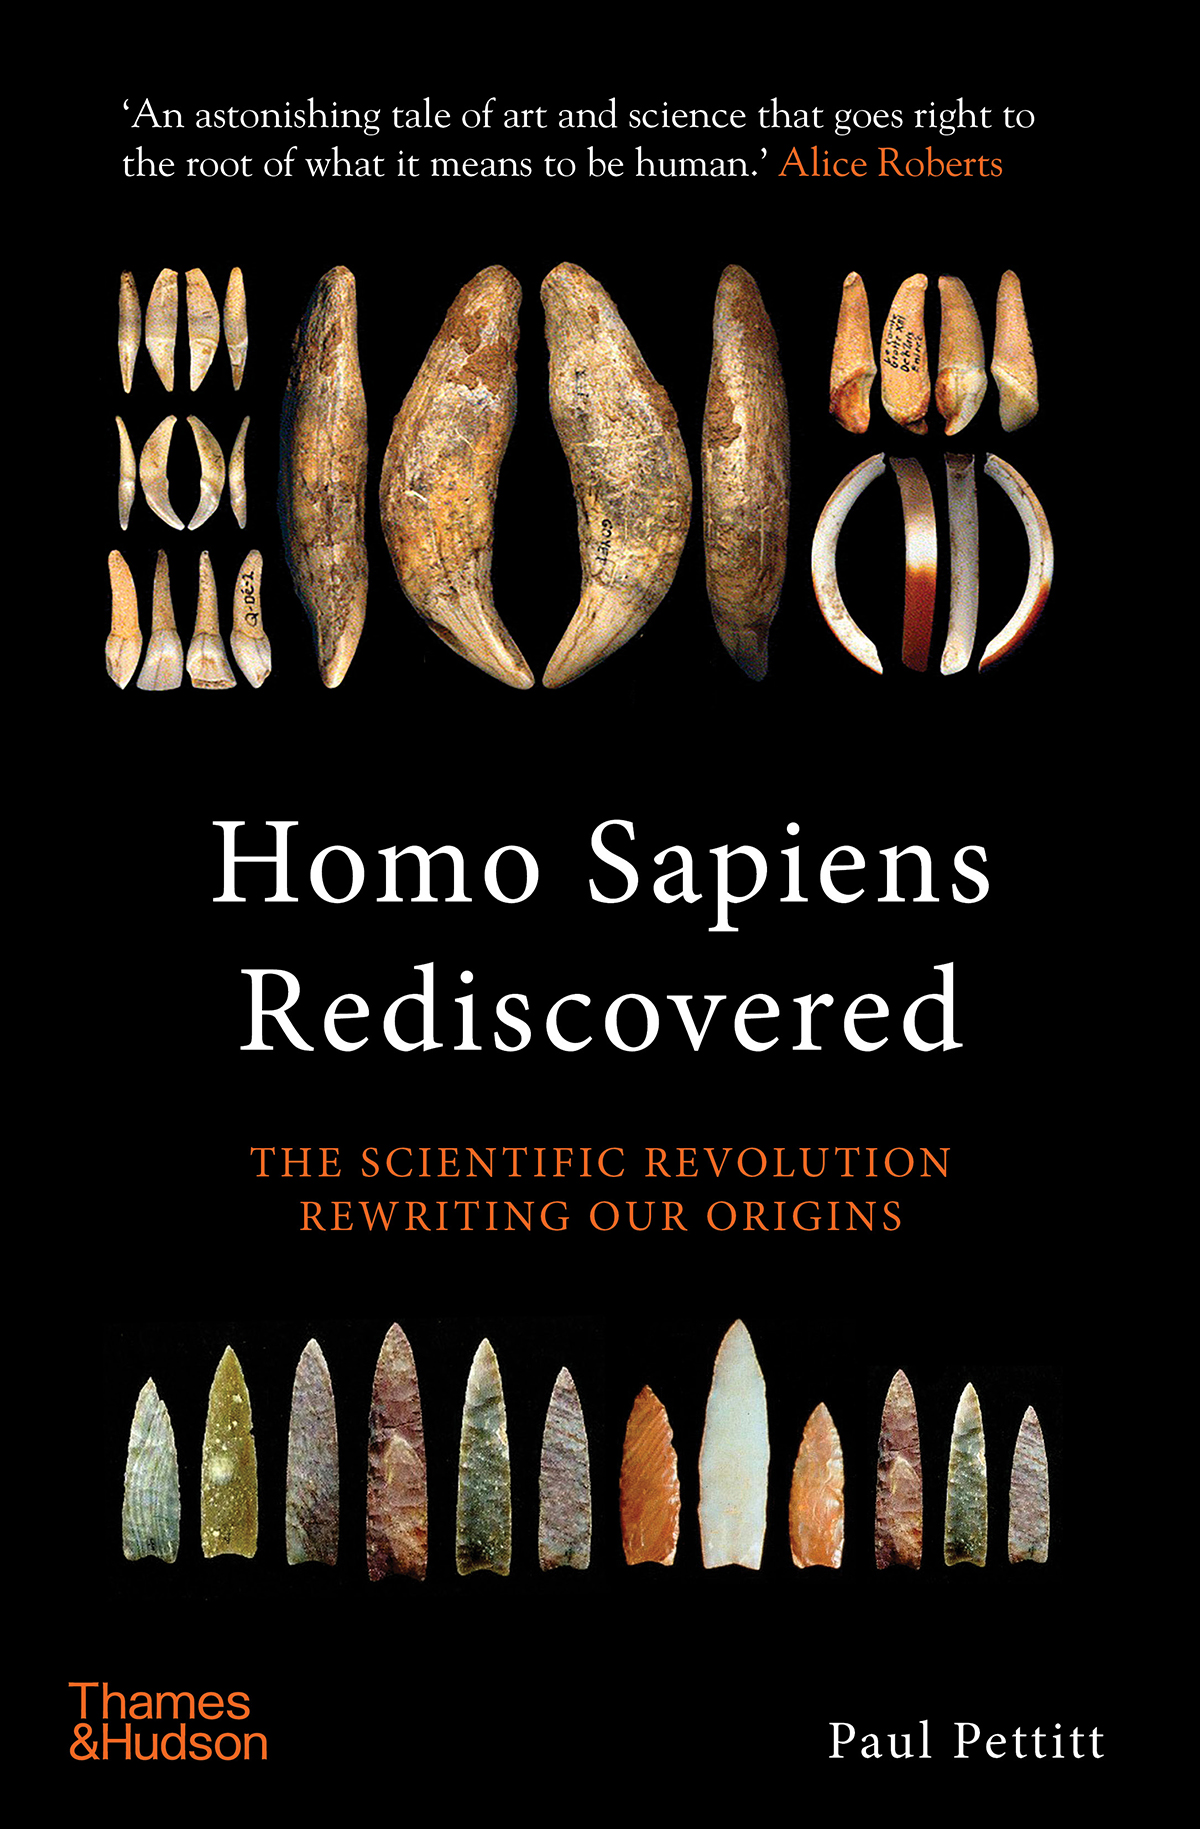 Homo Sapiens Rediscovered Scientific Revolution Rewriting our Origins Paul Pettitt palaeoarchaeologist evolution species Homo sapiens hominins climates art